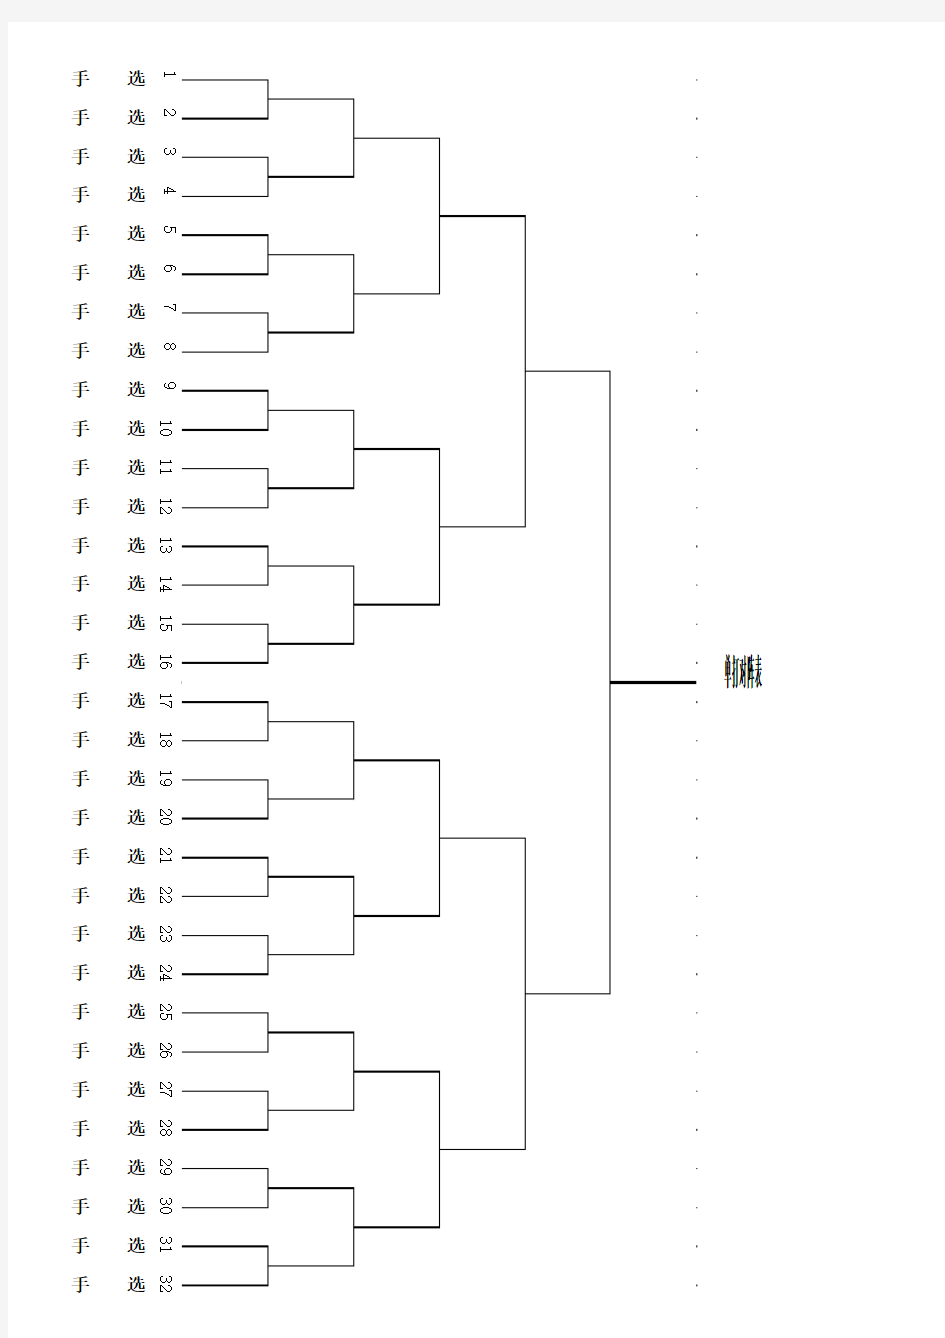 乒乓球比赛分组对阵表(8人、16人、32人)